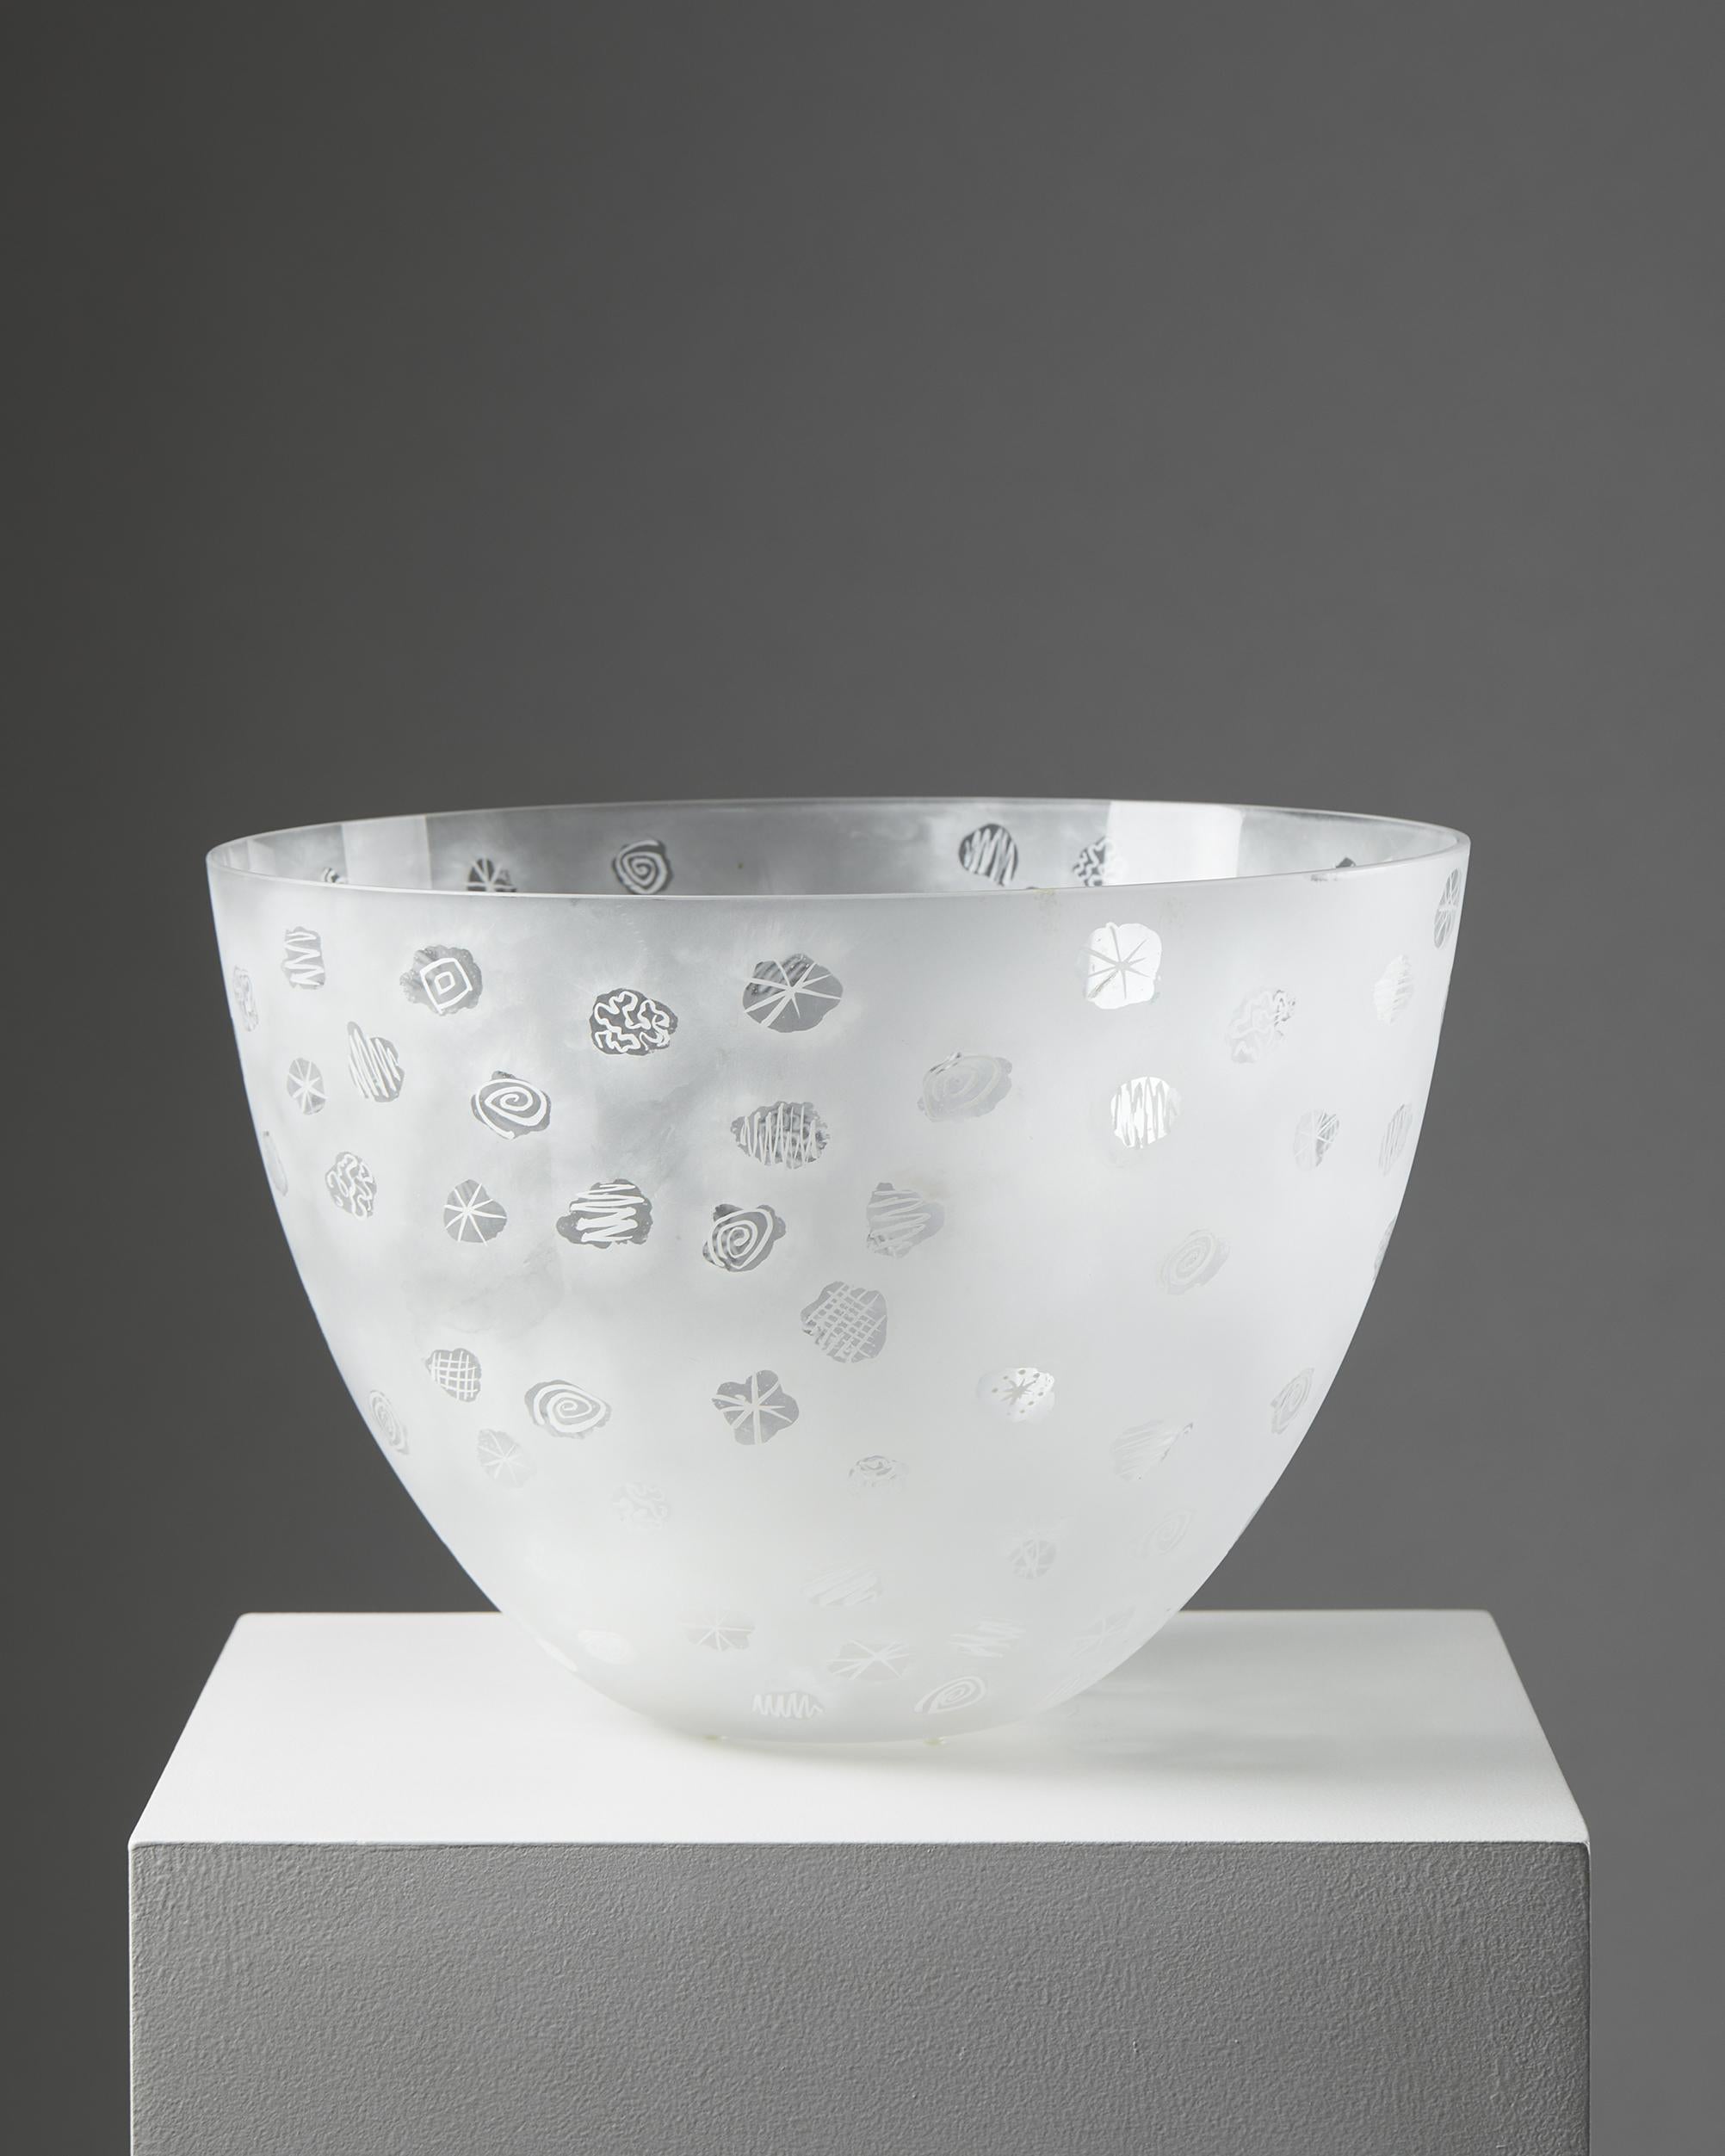 Mid-Century Modern Bowl Designed by Ingegerd Råman for Orrefors, Sweden, 2000's